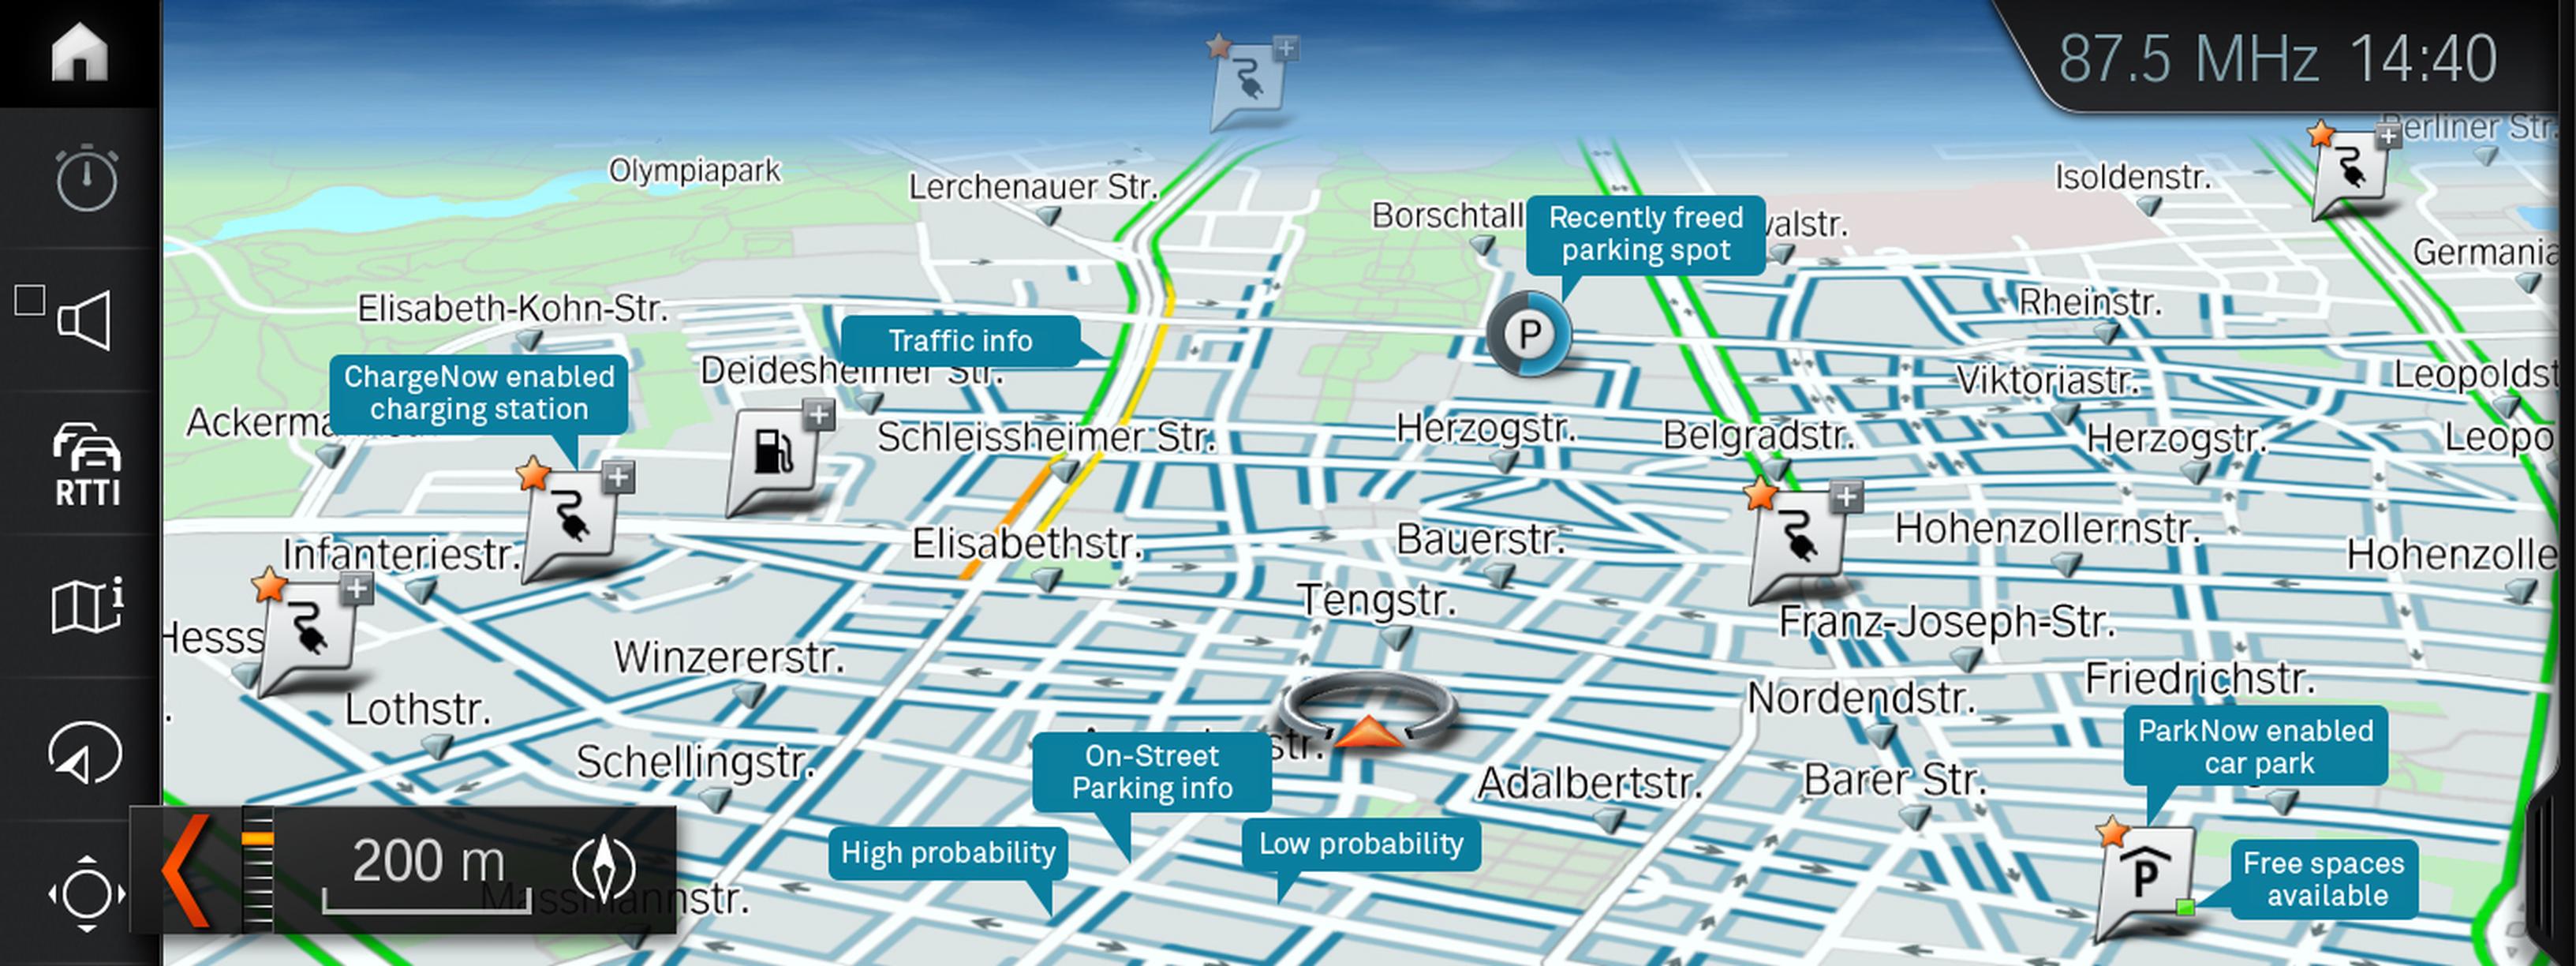 BMW and Parkmobile`s On-Street Parking Information (OSPI) system